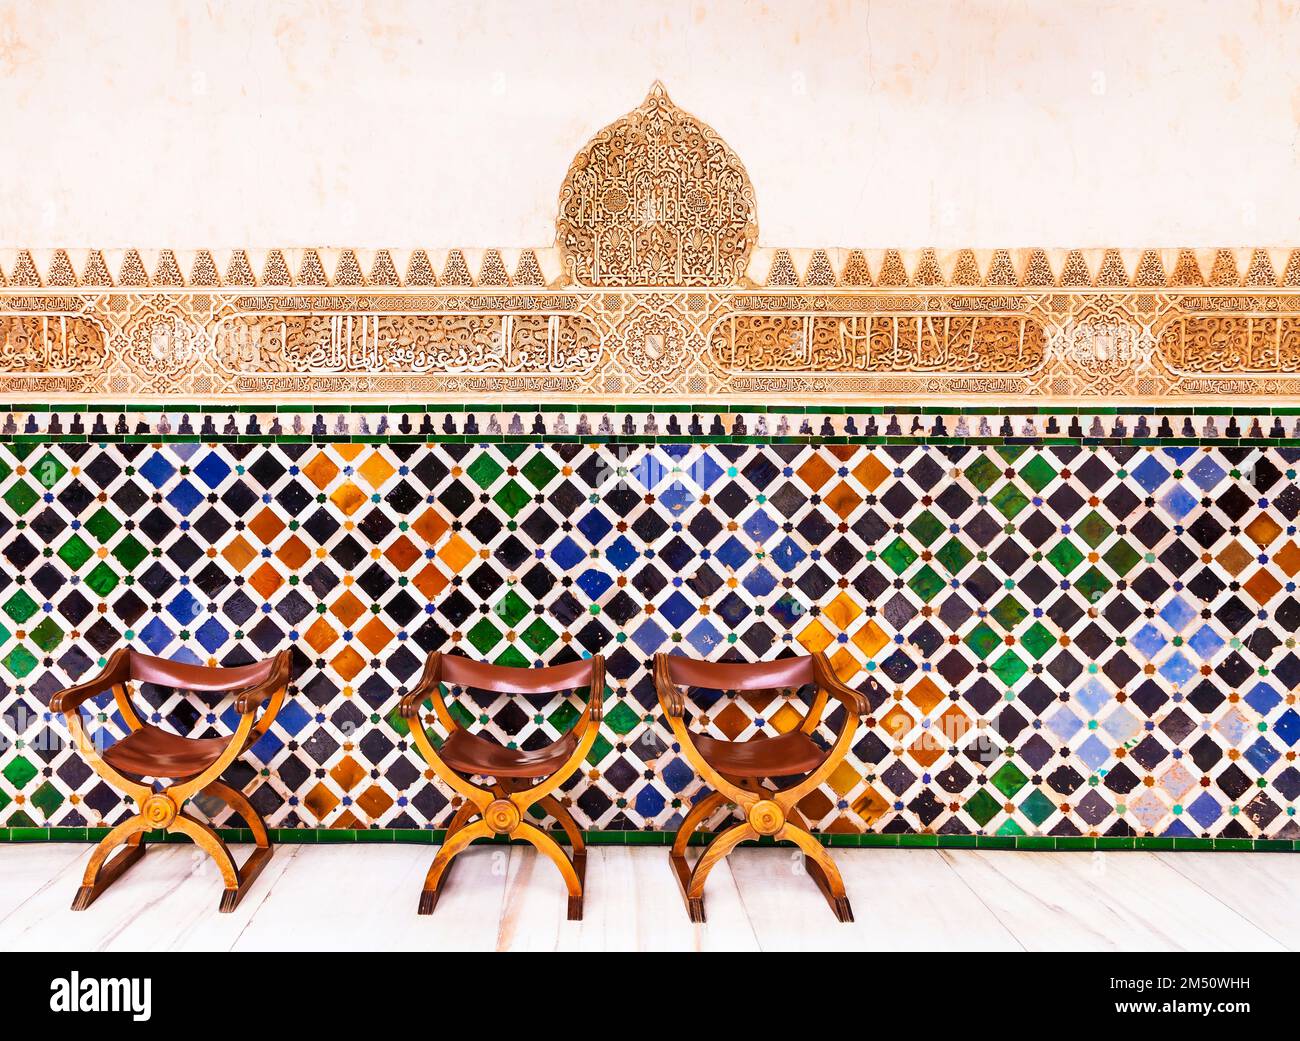 Fantastischer Alhambra Palast - Mosaik und geschnitzte Wände im arabischen Stil in Granada, Andalusien, Spanien Stockfoto